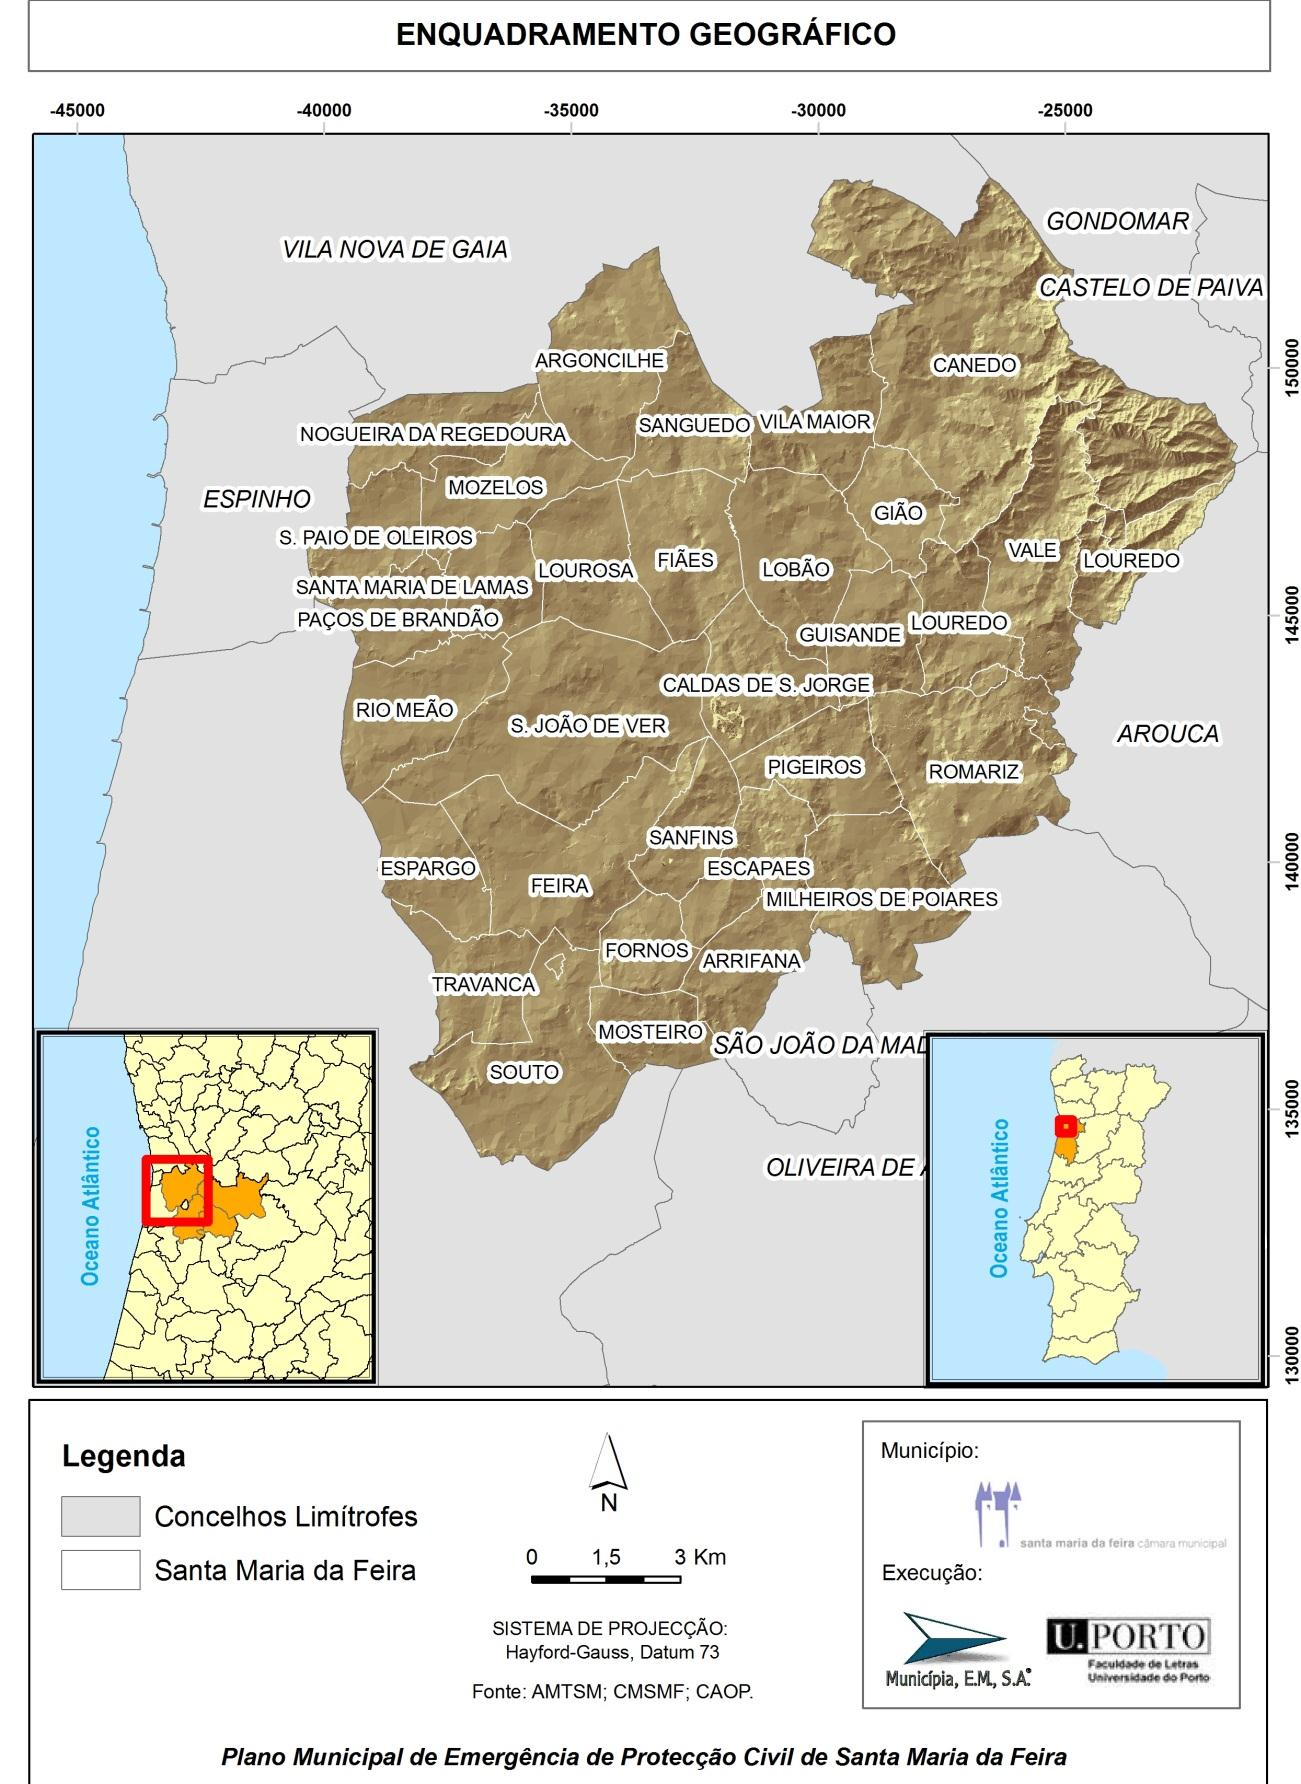 Mapa 1 Enquadramento geográfico do concelho de Santa Maria da Feira.